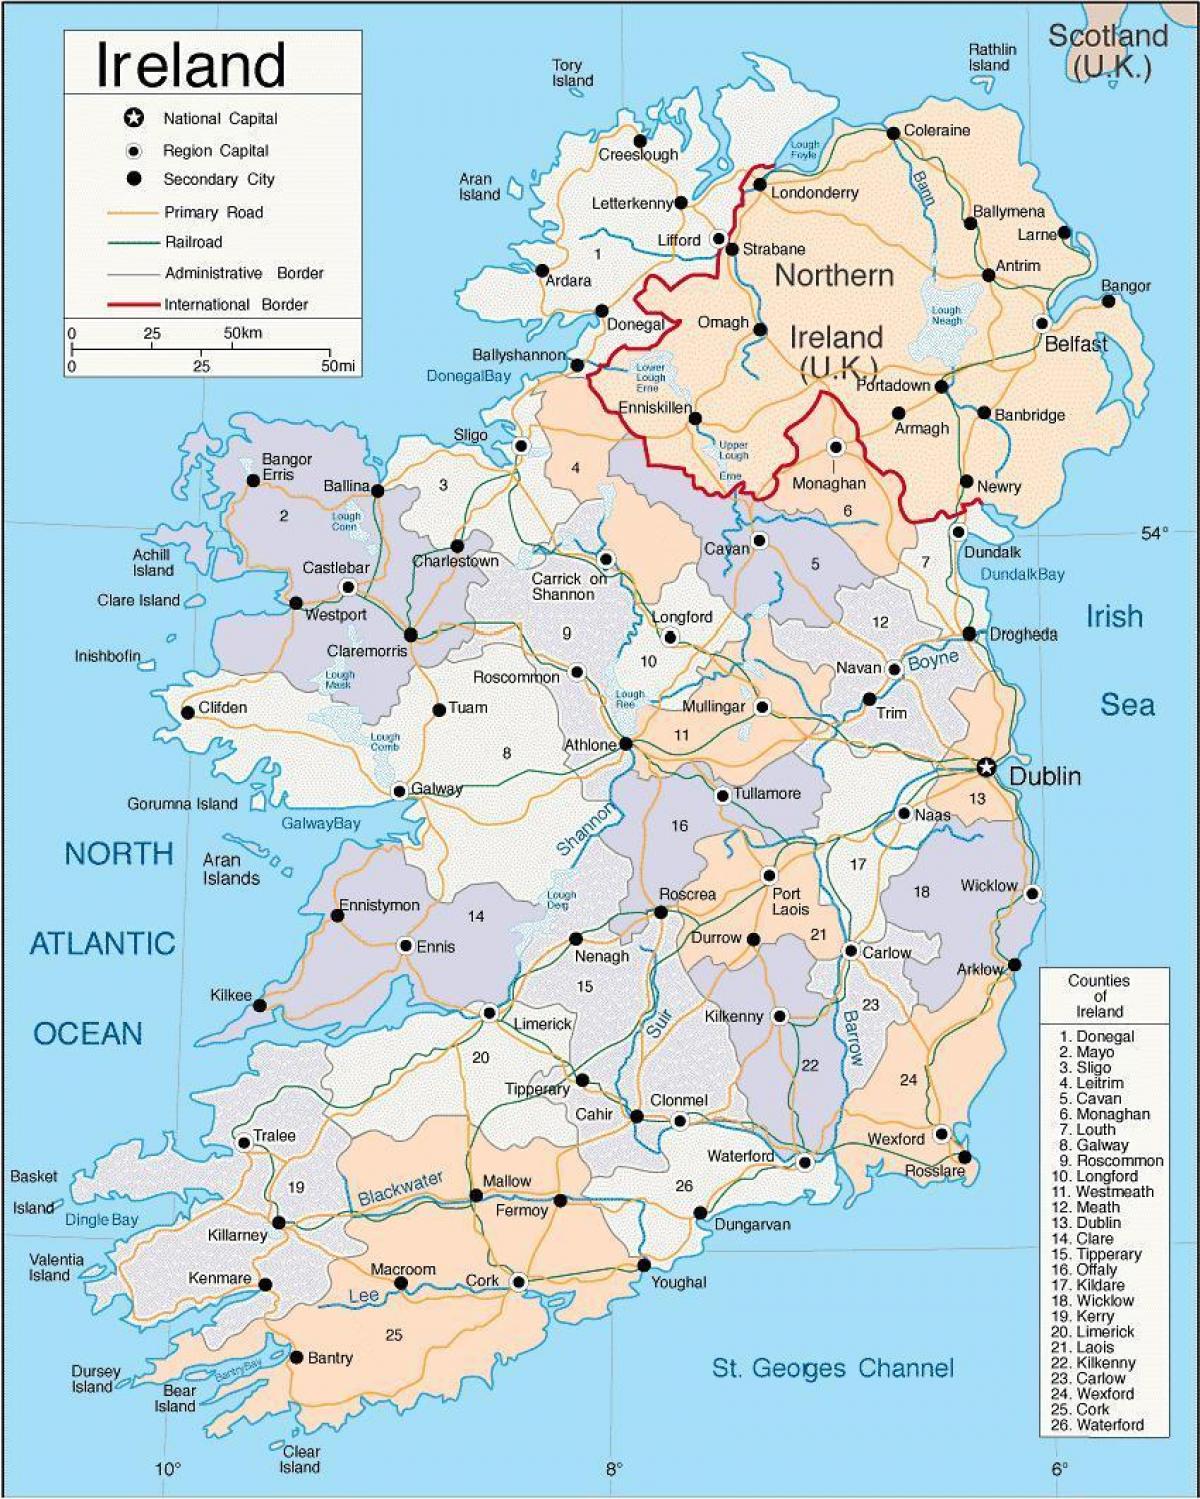 χάρτης της ιρλανδίας συμπεριλαμβανομένης κομητείες